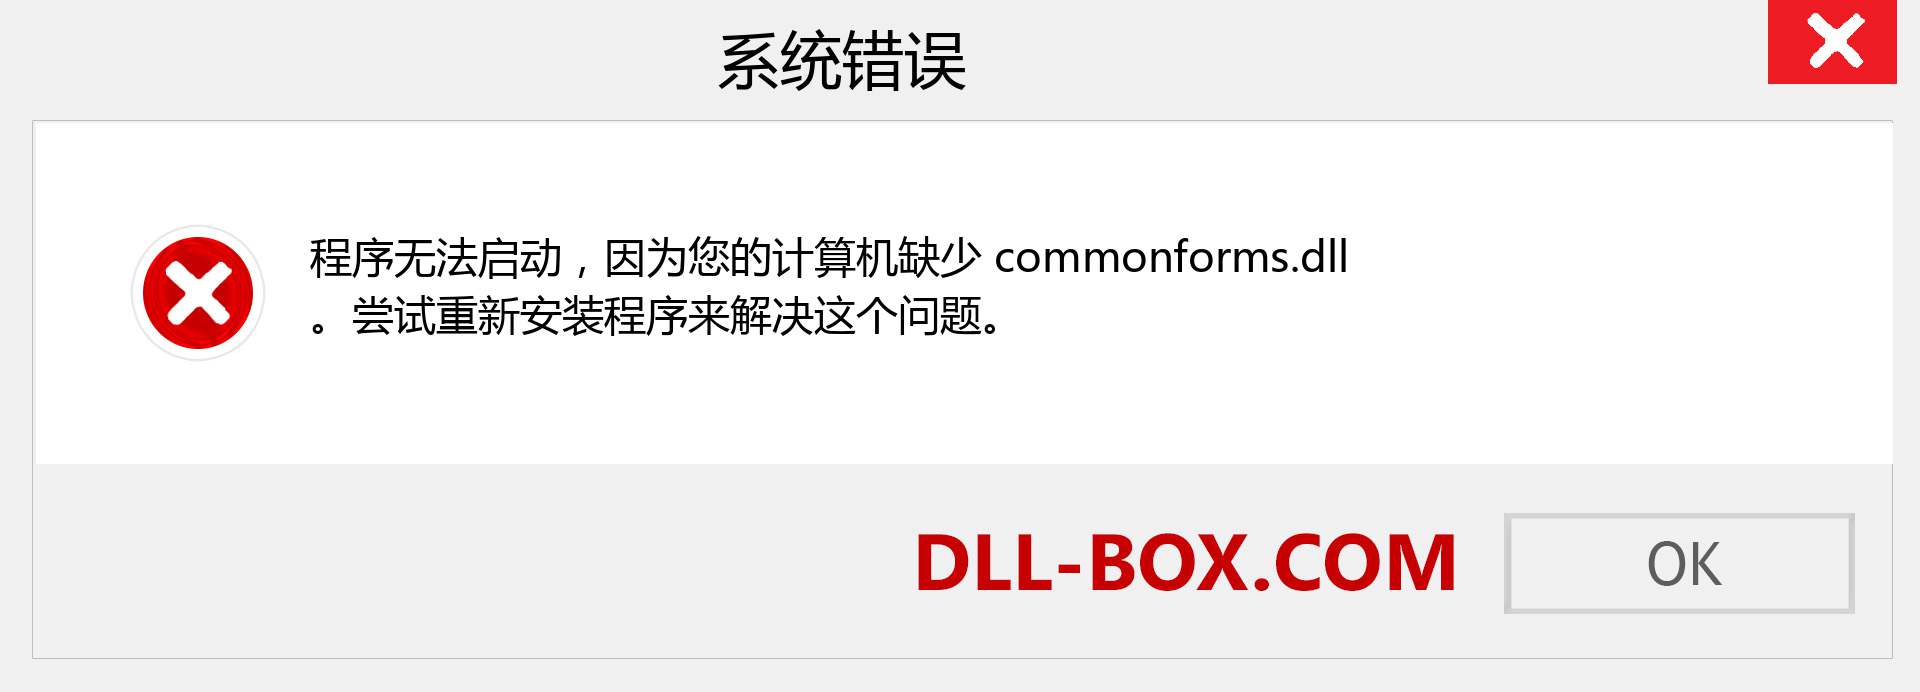 commonforms.dll 文件丢失？。 适用于 Windows 7、8、10 的下载 - 修复 Windows、照片、图像上的 commonforms dll 丢失错误